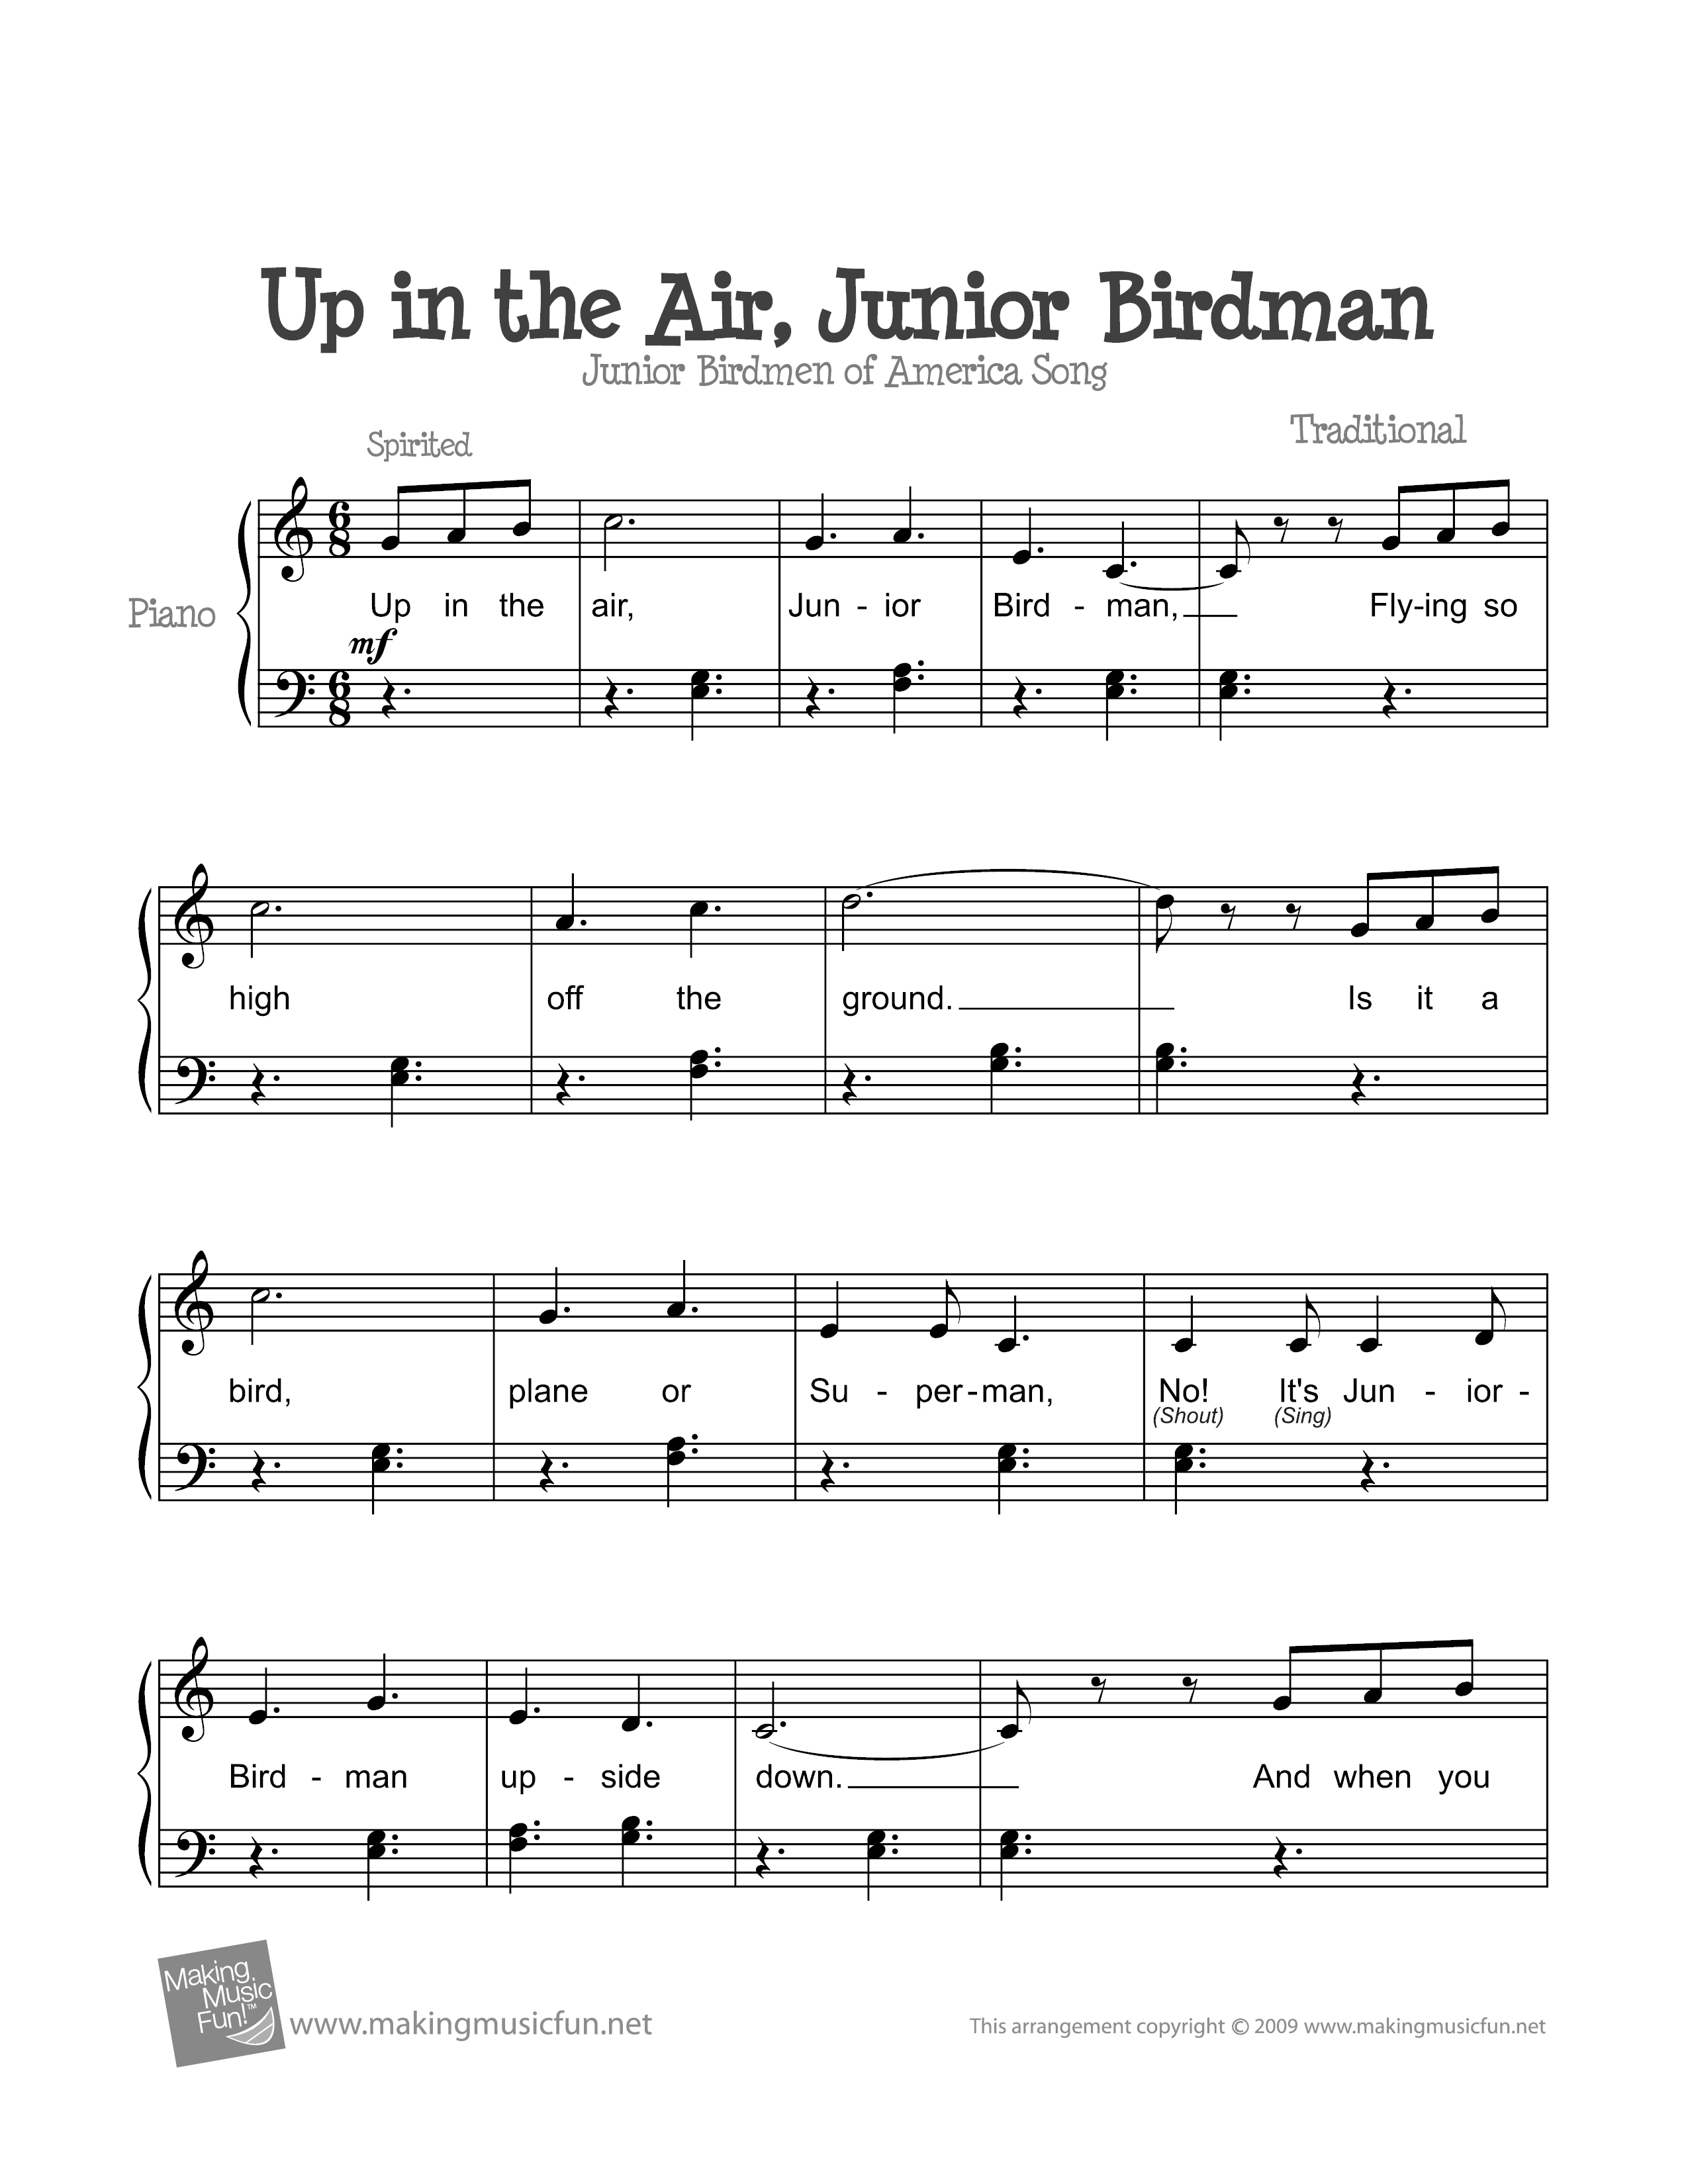 Up in the Air, Junior Birdman Score